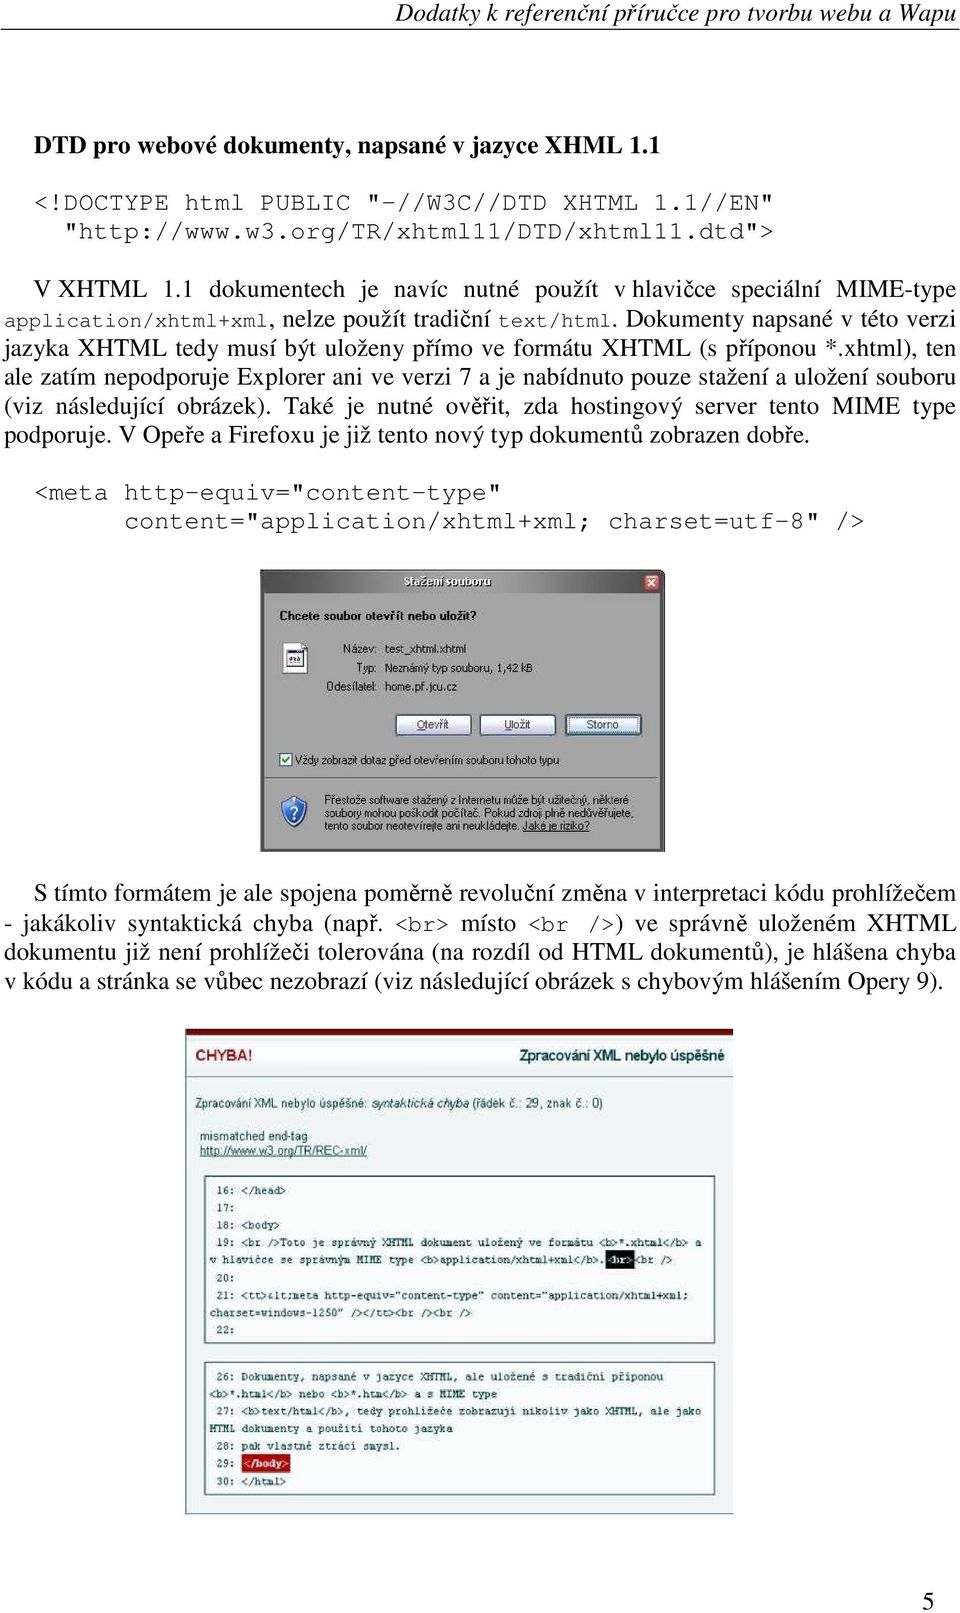 Dokumenty napsané v této verzi jazyka XHTML tedy musí být uloženy přímo ve formátu XHTML (s příponou *.